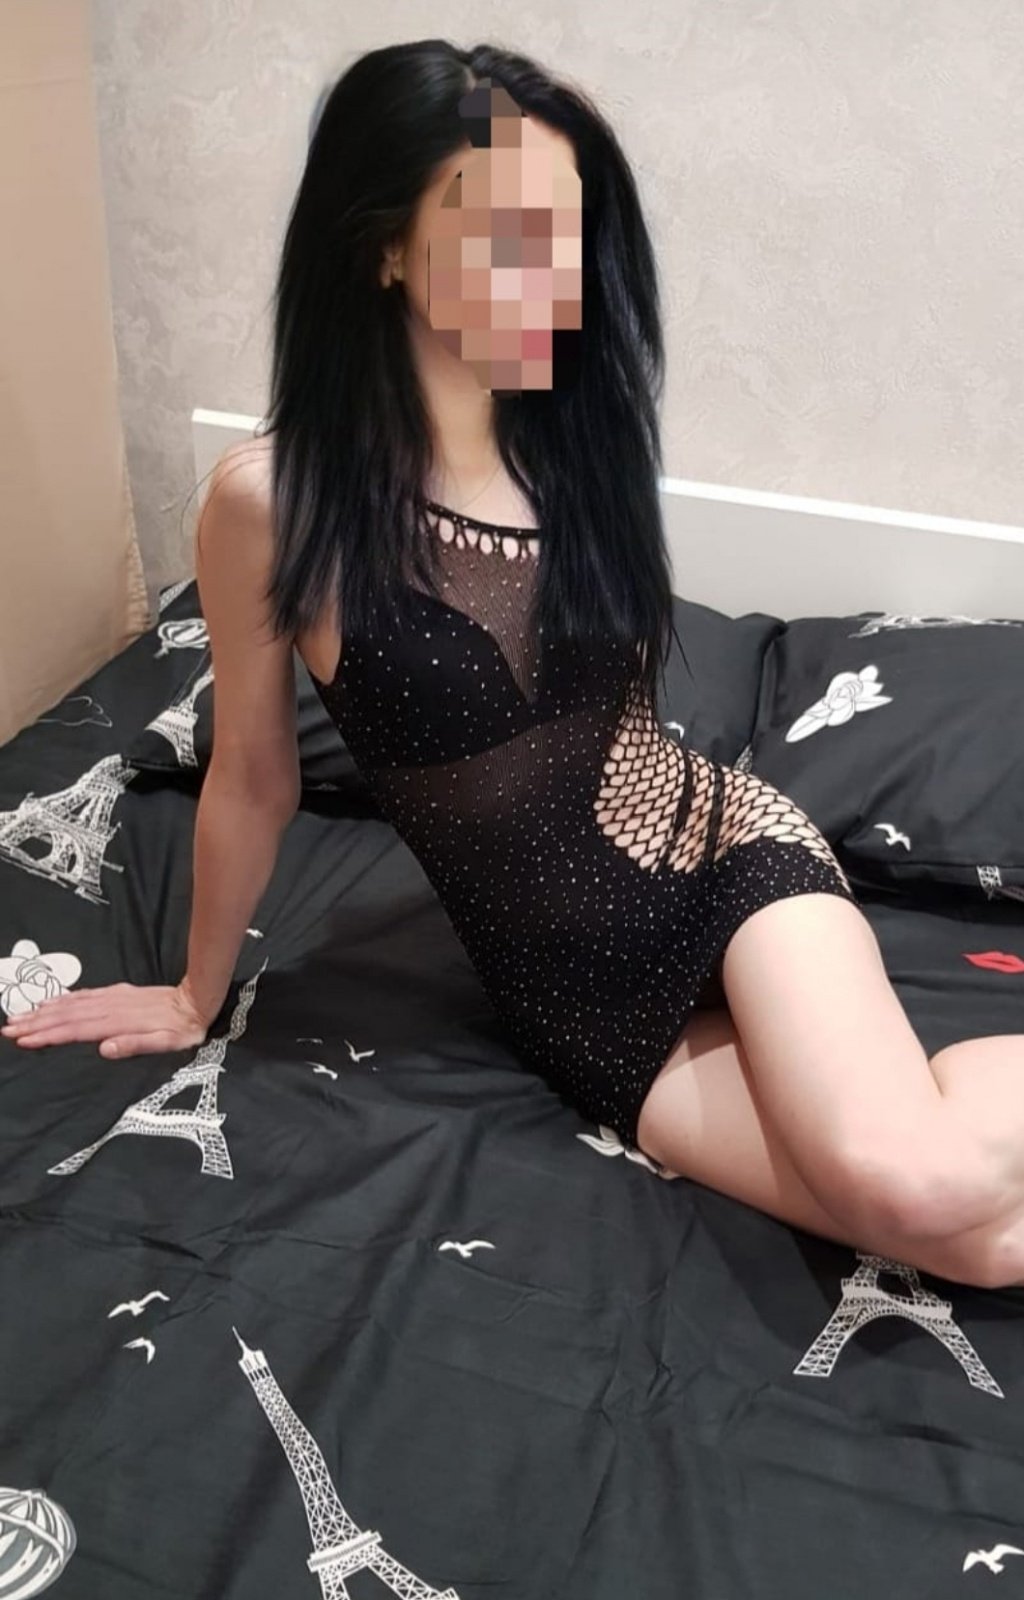 Софья : проститутки индивидуалки в Ярославле